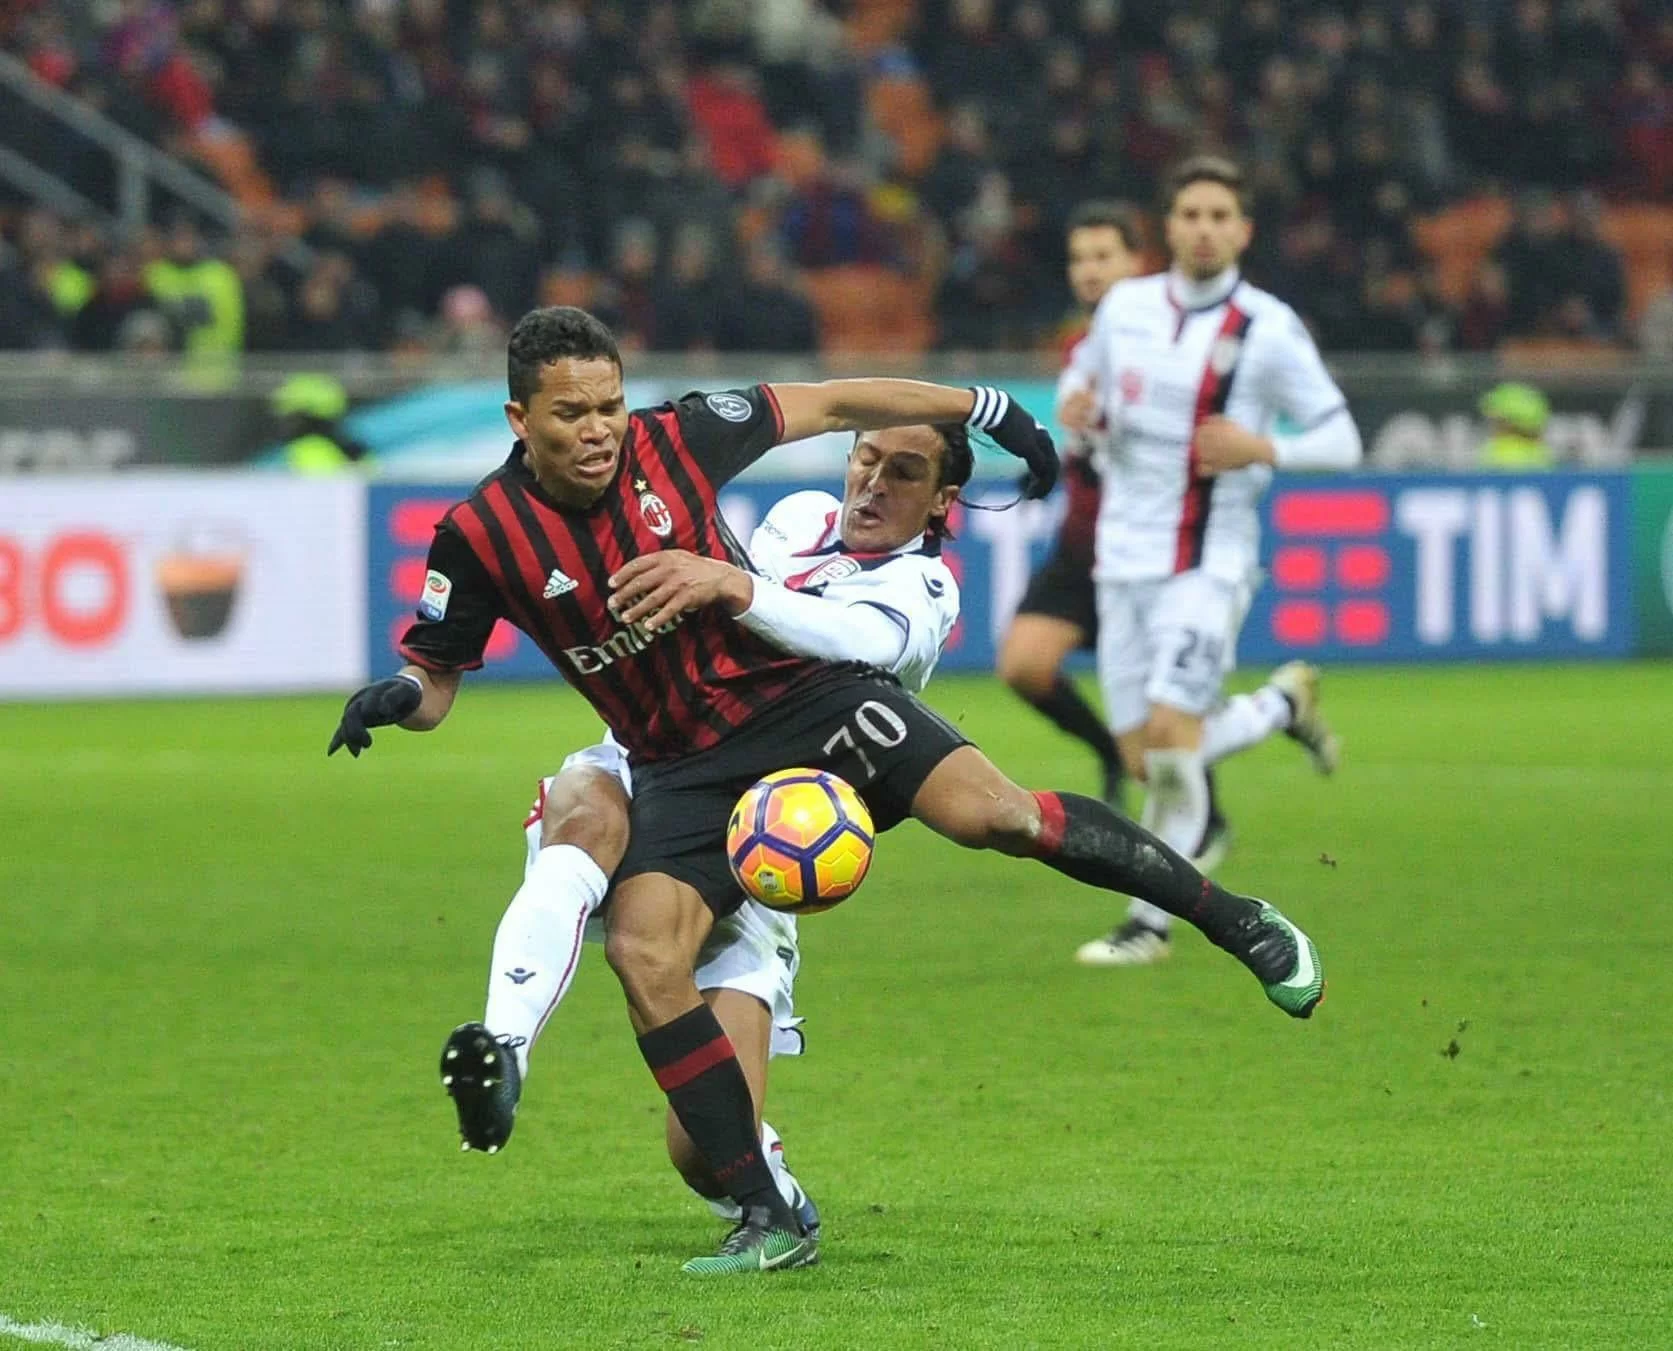 Serie A, se le partite finissero all’80’ il Milan sarebbe sesto a 31 punti